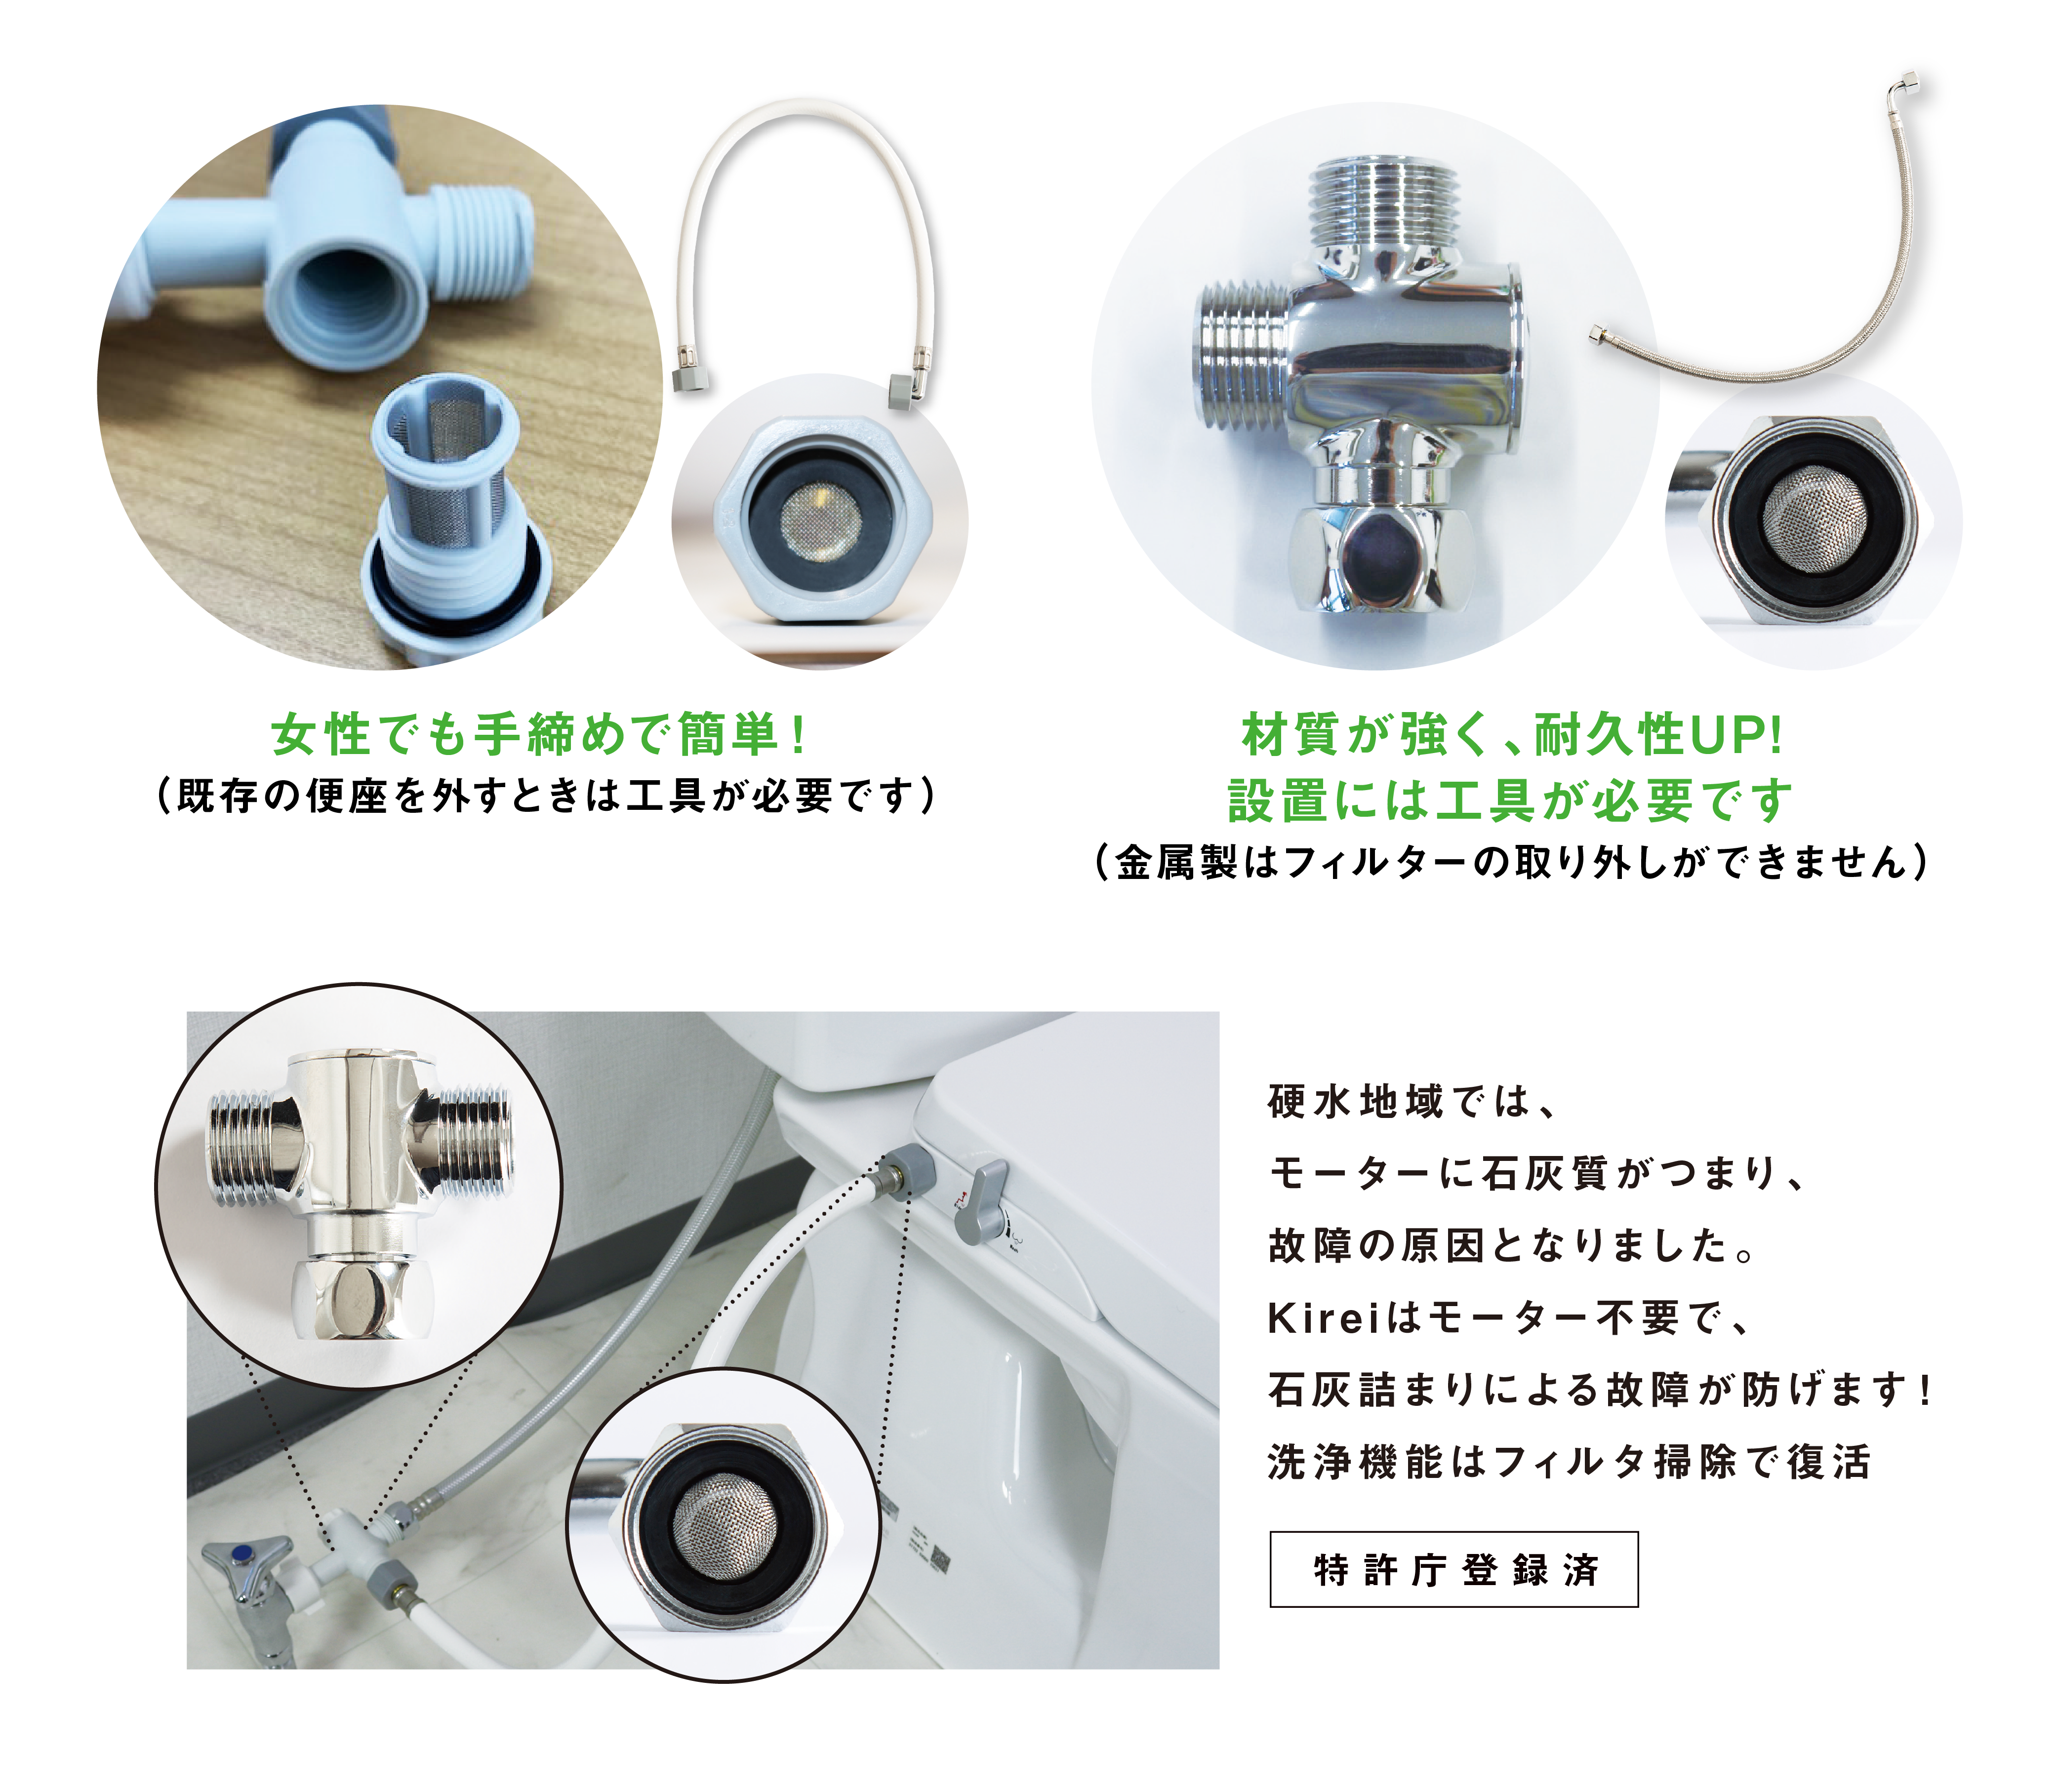 水圧式洗浄便座『Kirei』に新製品『SG-002』登場！ | 株式会社中原電気商会